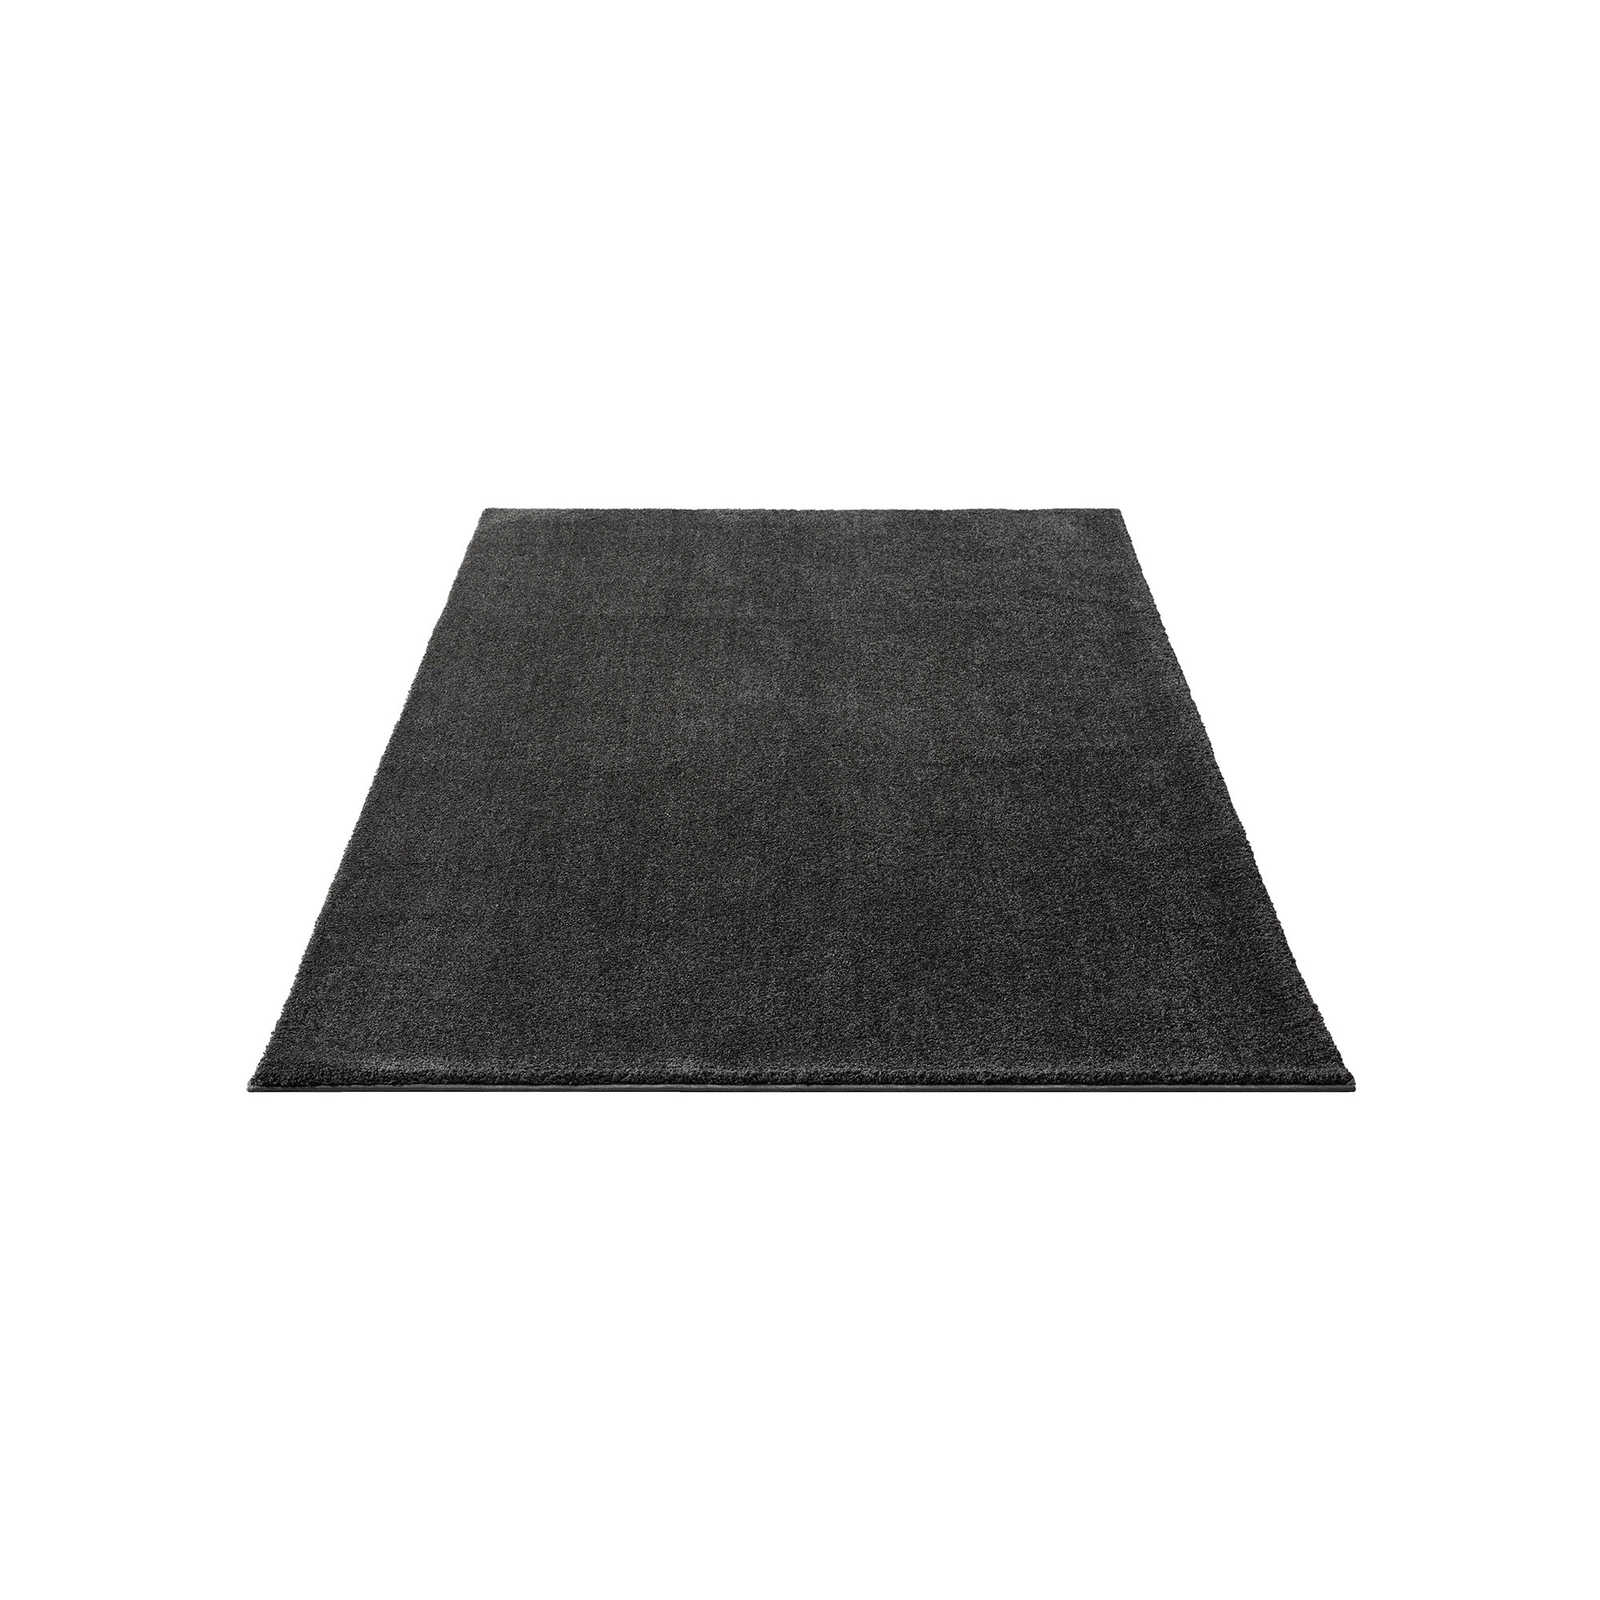 Soft short pile carpet in anthracite - 200 x 140 cm
